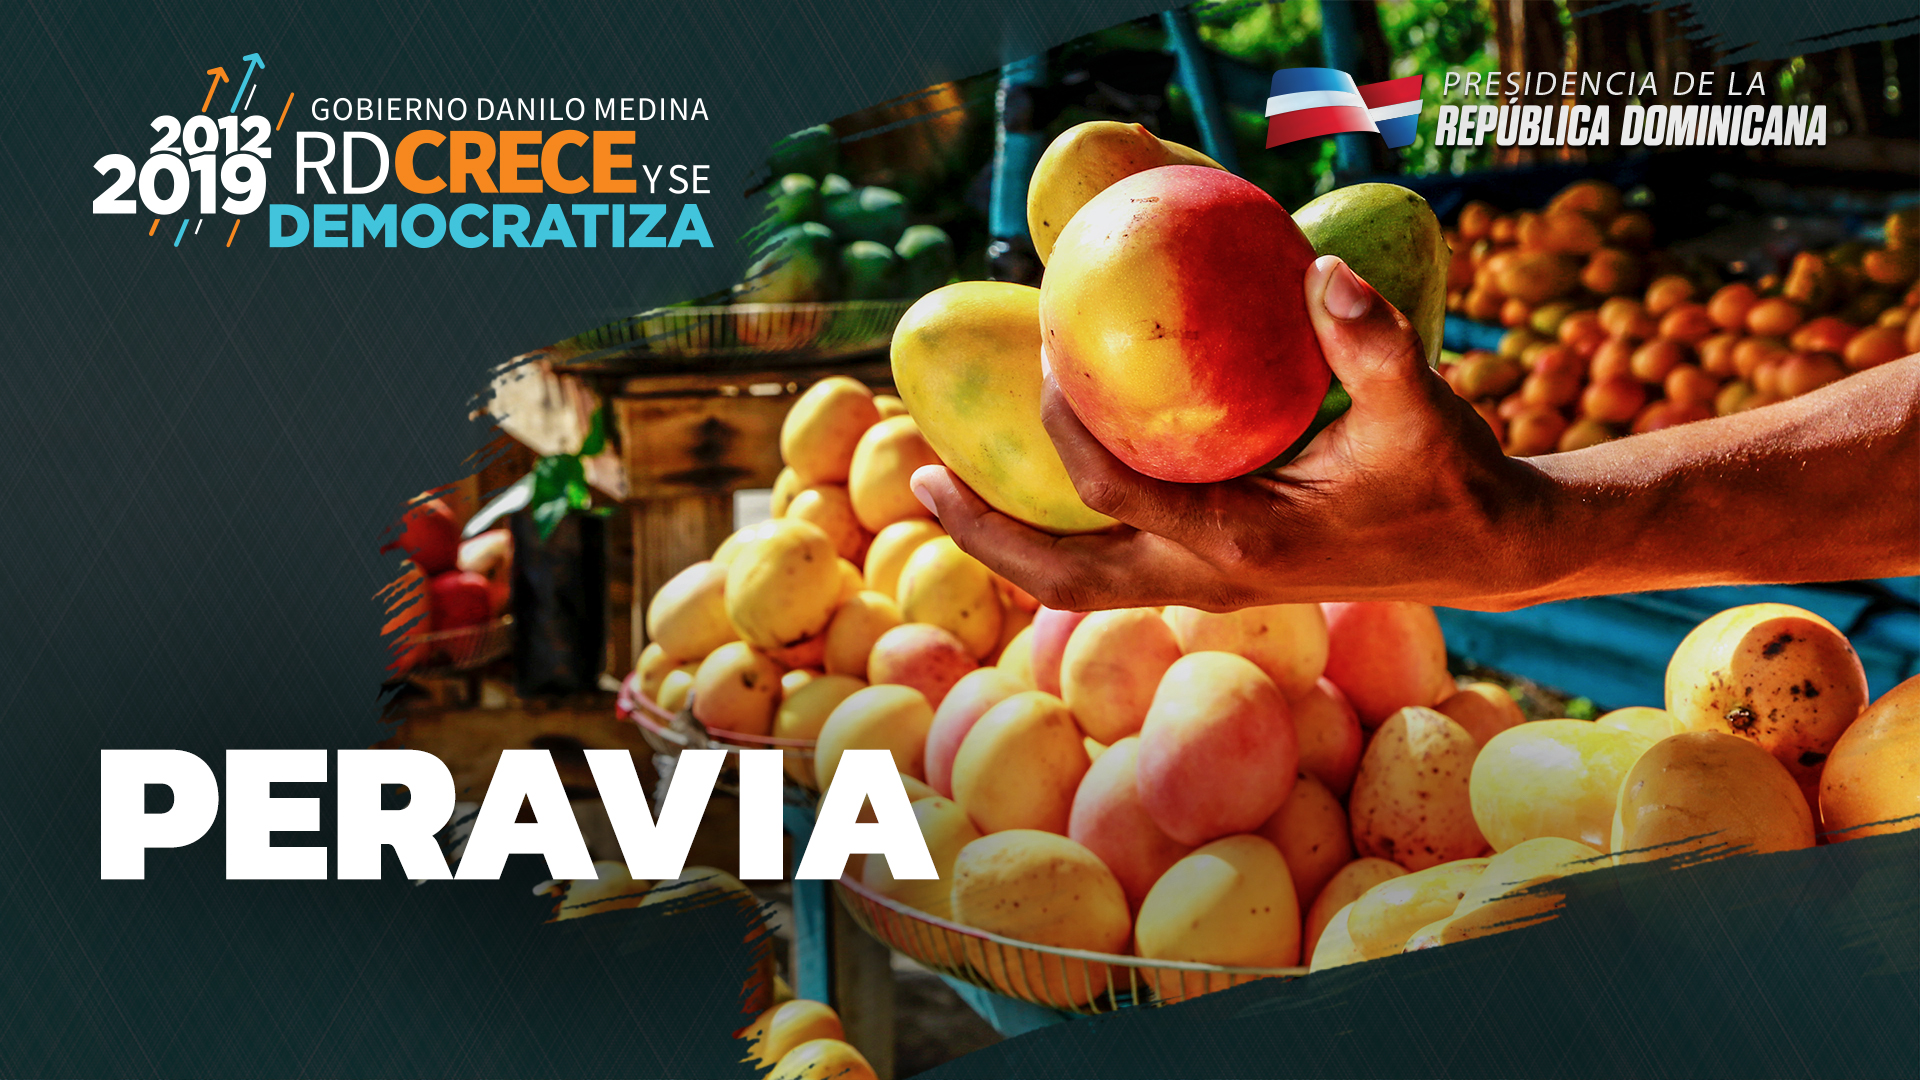 REPÚBLICA DOMINICANA: Peravia, la verdadera capital del mango. Banilejos cuentan con la planta más moderna del Caribe, conquista obtenida en Visita Sorpresa